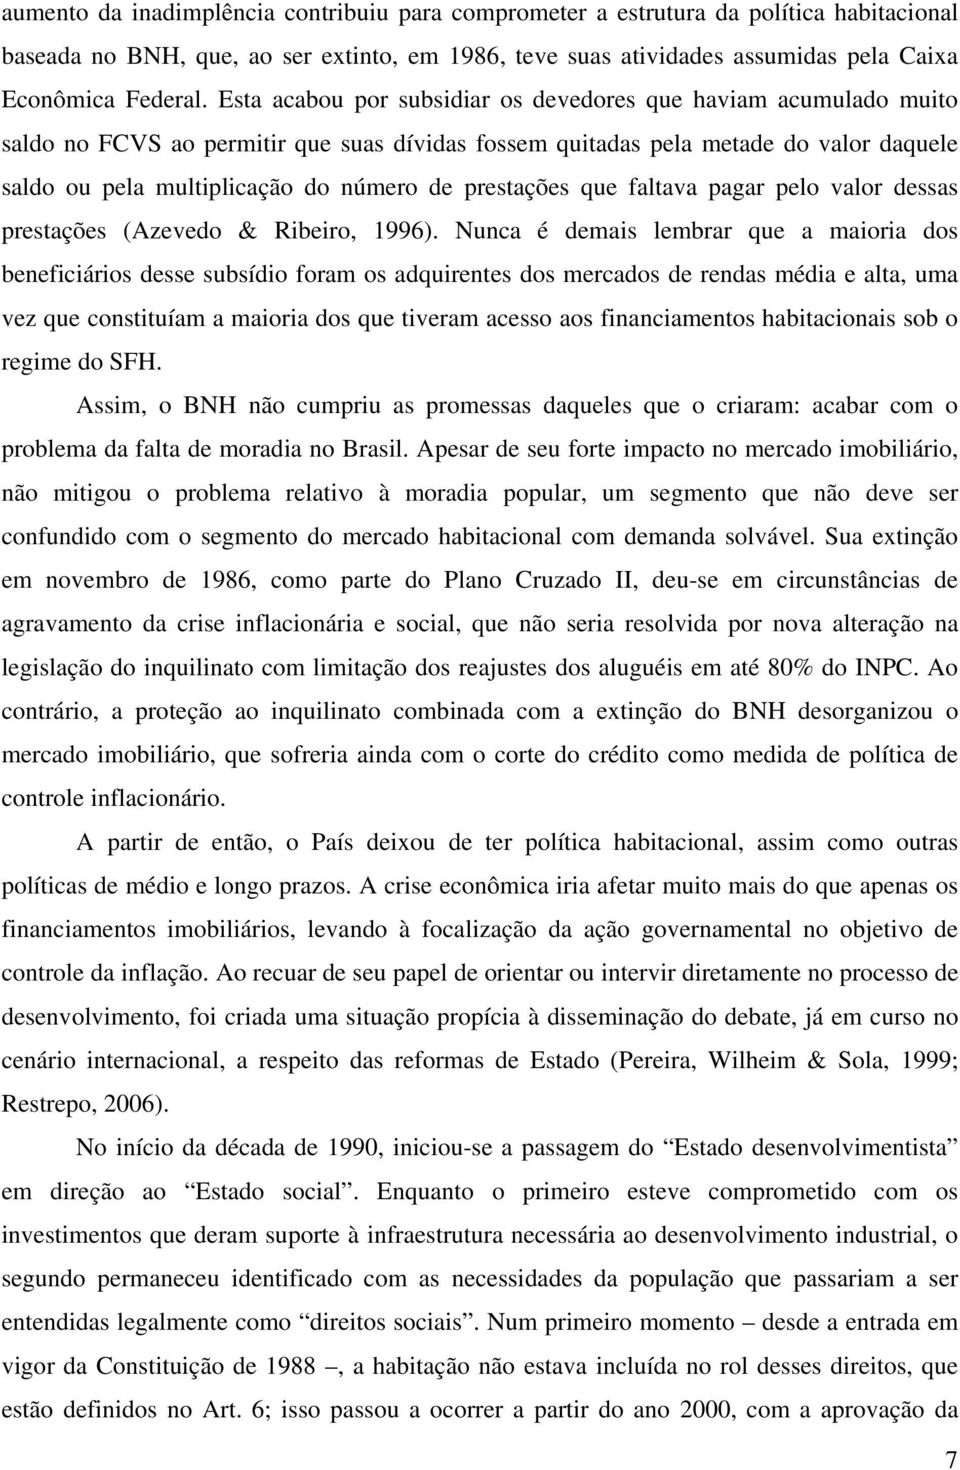 prestações que faltava pagar pelo valor dessas prestações (Azevedo & Ribeiro, 1996).